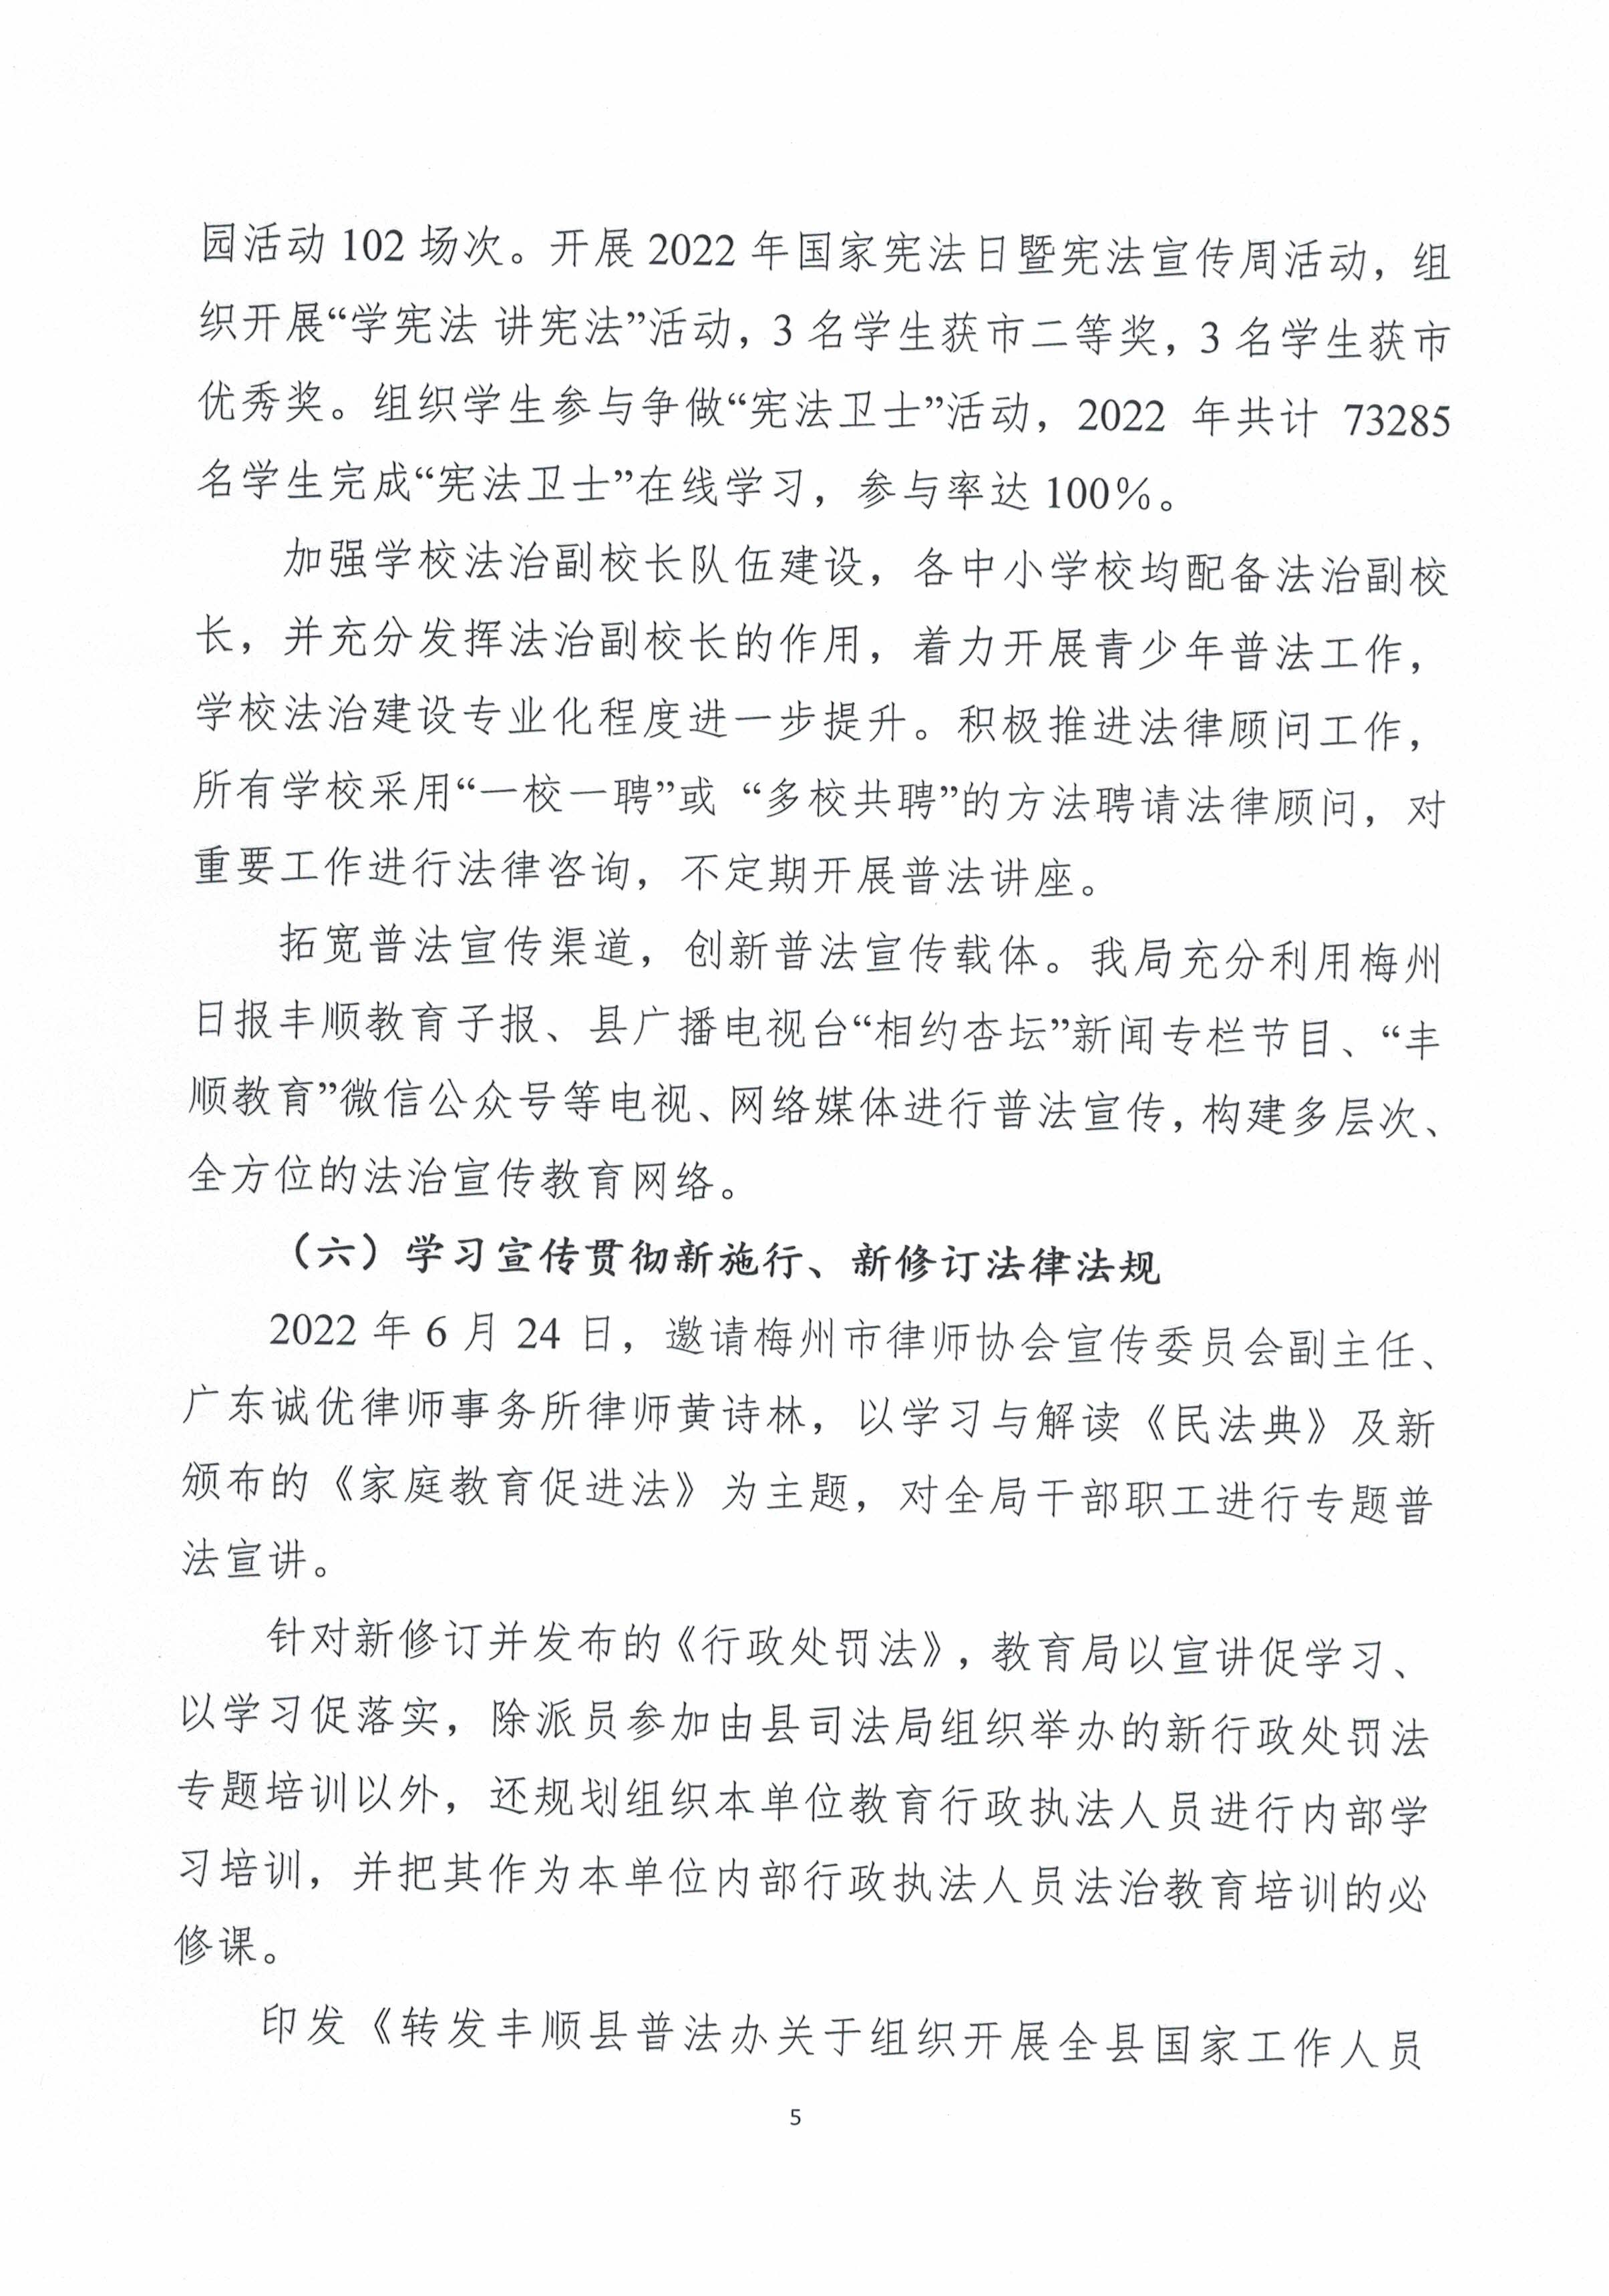 丰顺县教育局2022年法治政府建设年度报告（盖章扫描版）_页面_5.jpg